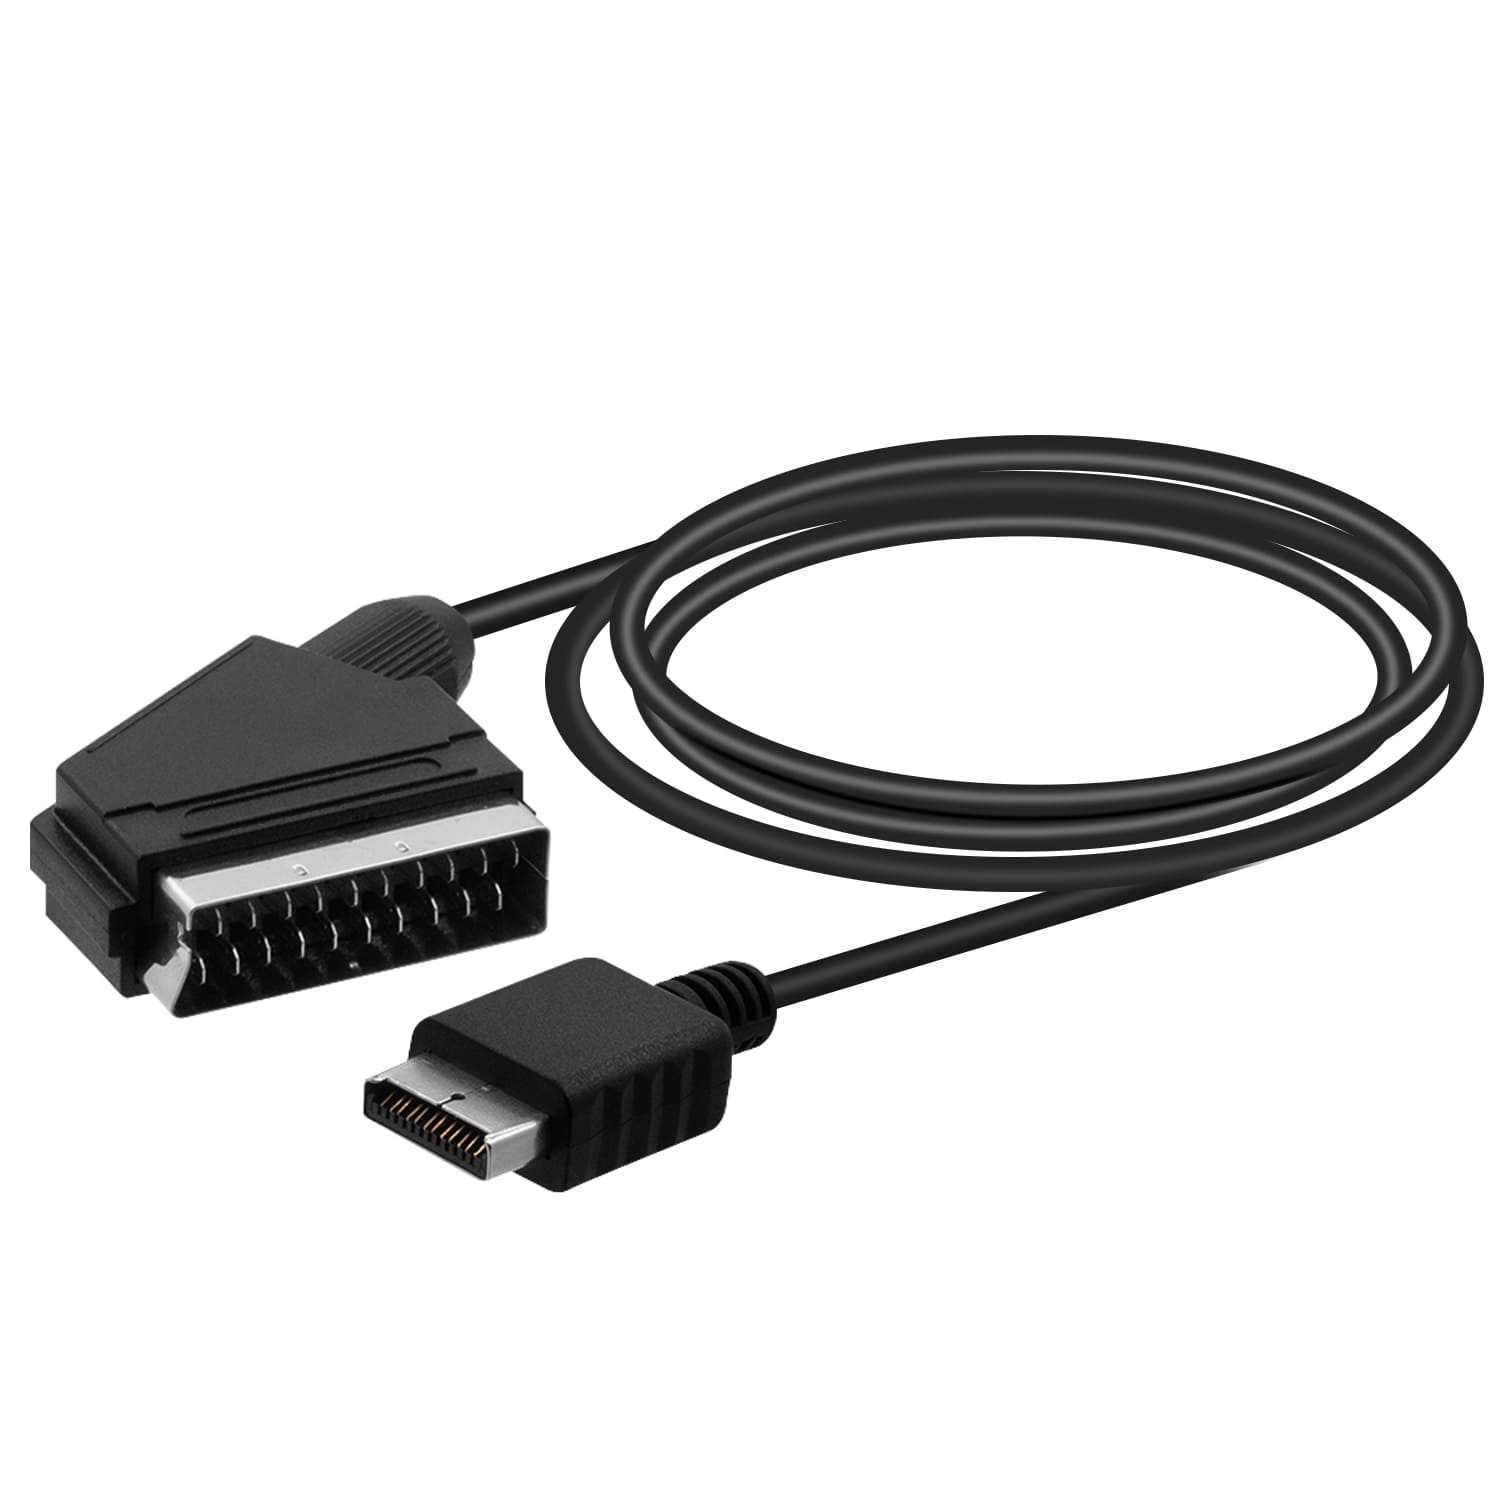 Cable Péritel PS2/PS3 - Cable